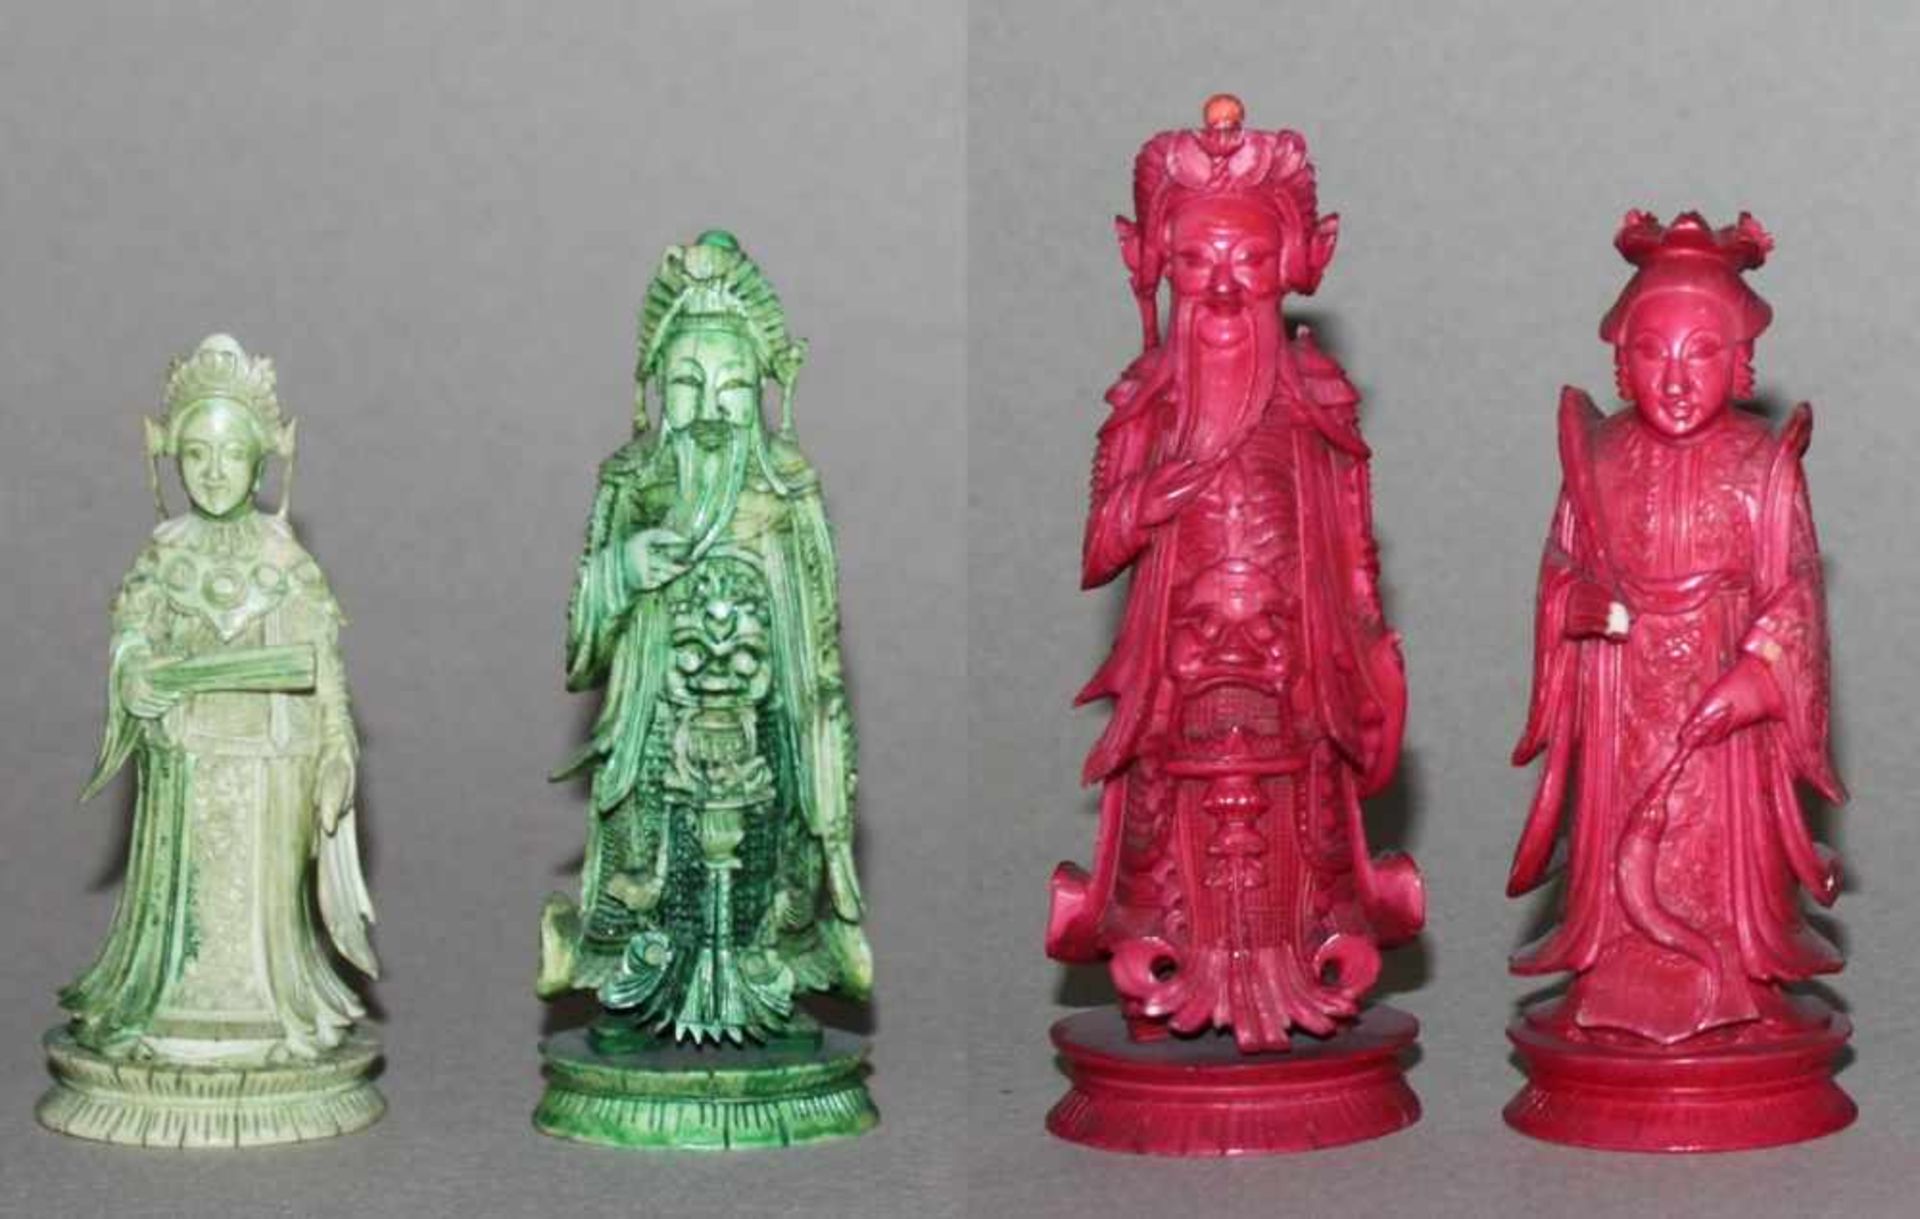 Asien. China. Elfenbeinschachfiguren.Die eine Partei in rot, die andere in grün. China, Produktion